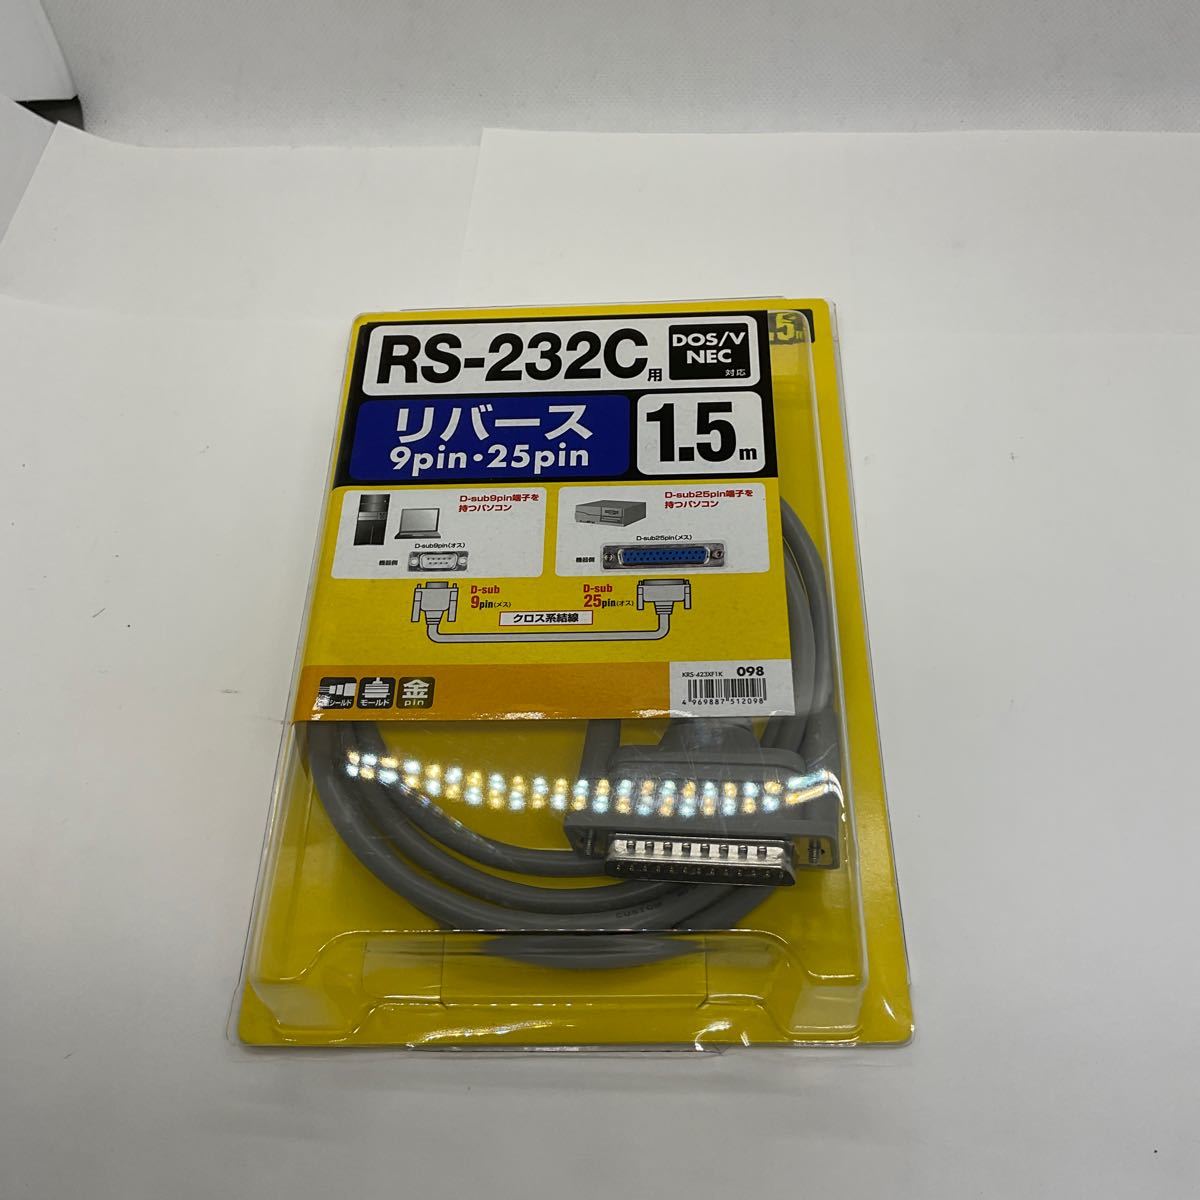 * (D371) нераспечатанный SANWA RS-232C Rebirth кабель 